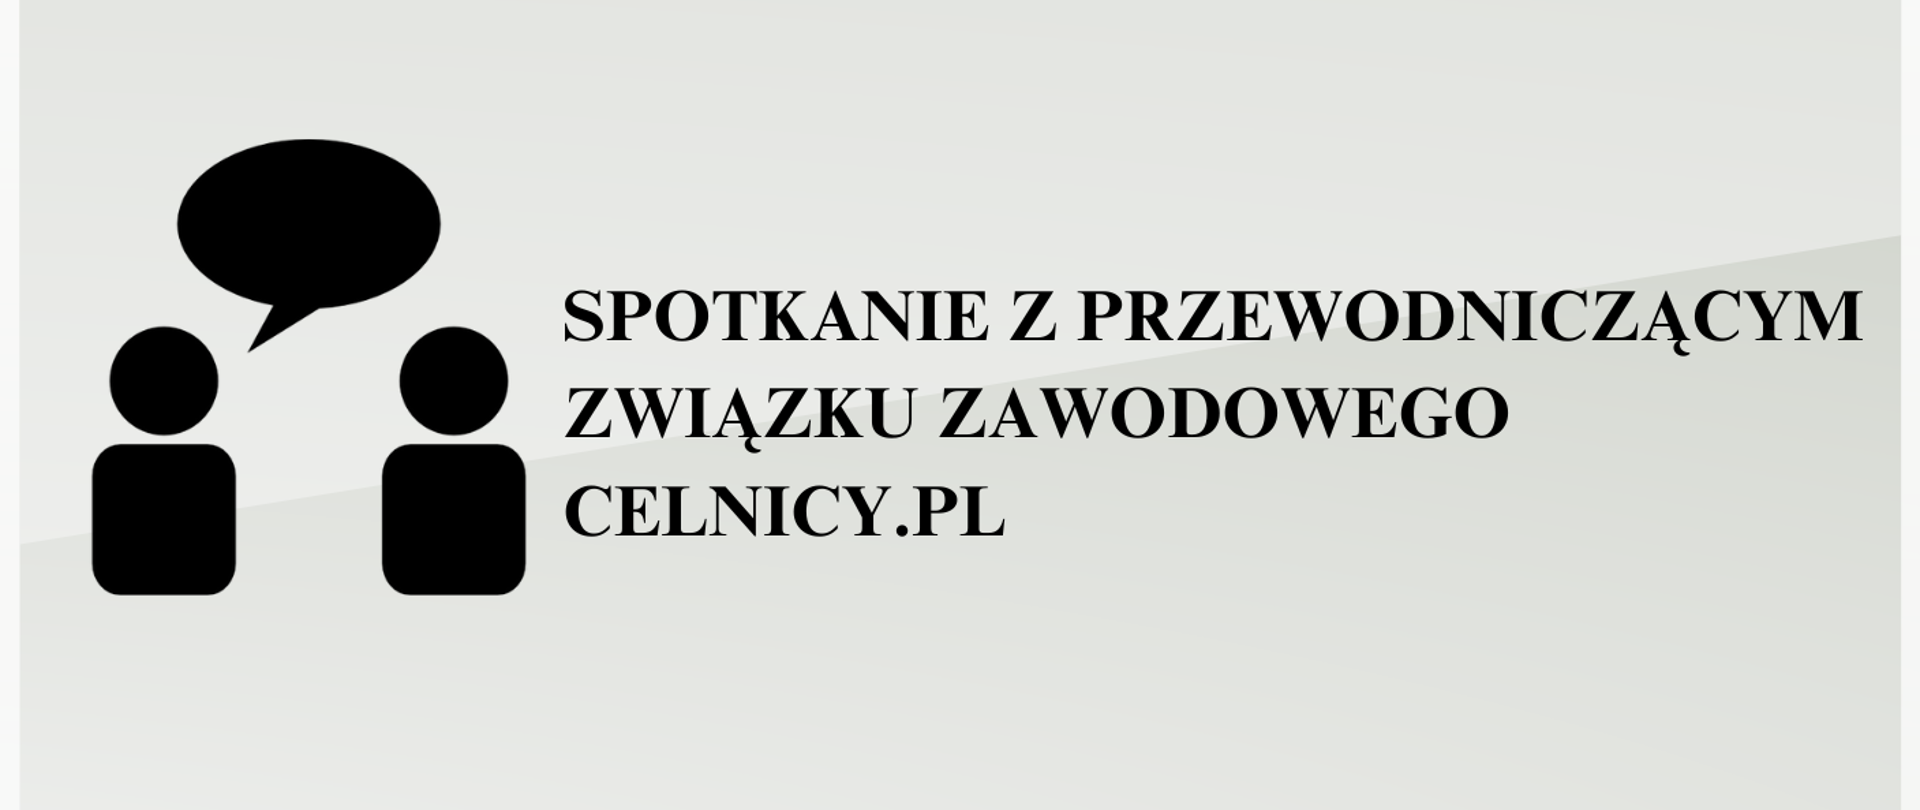 Spotkanie z przewodniczącym ZZ Celnicy.pl